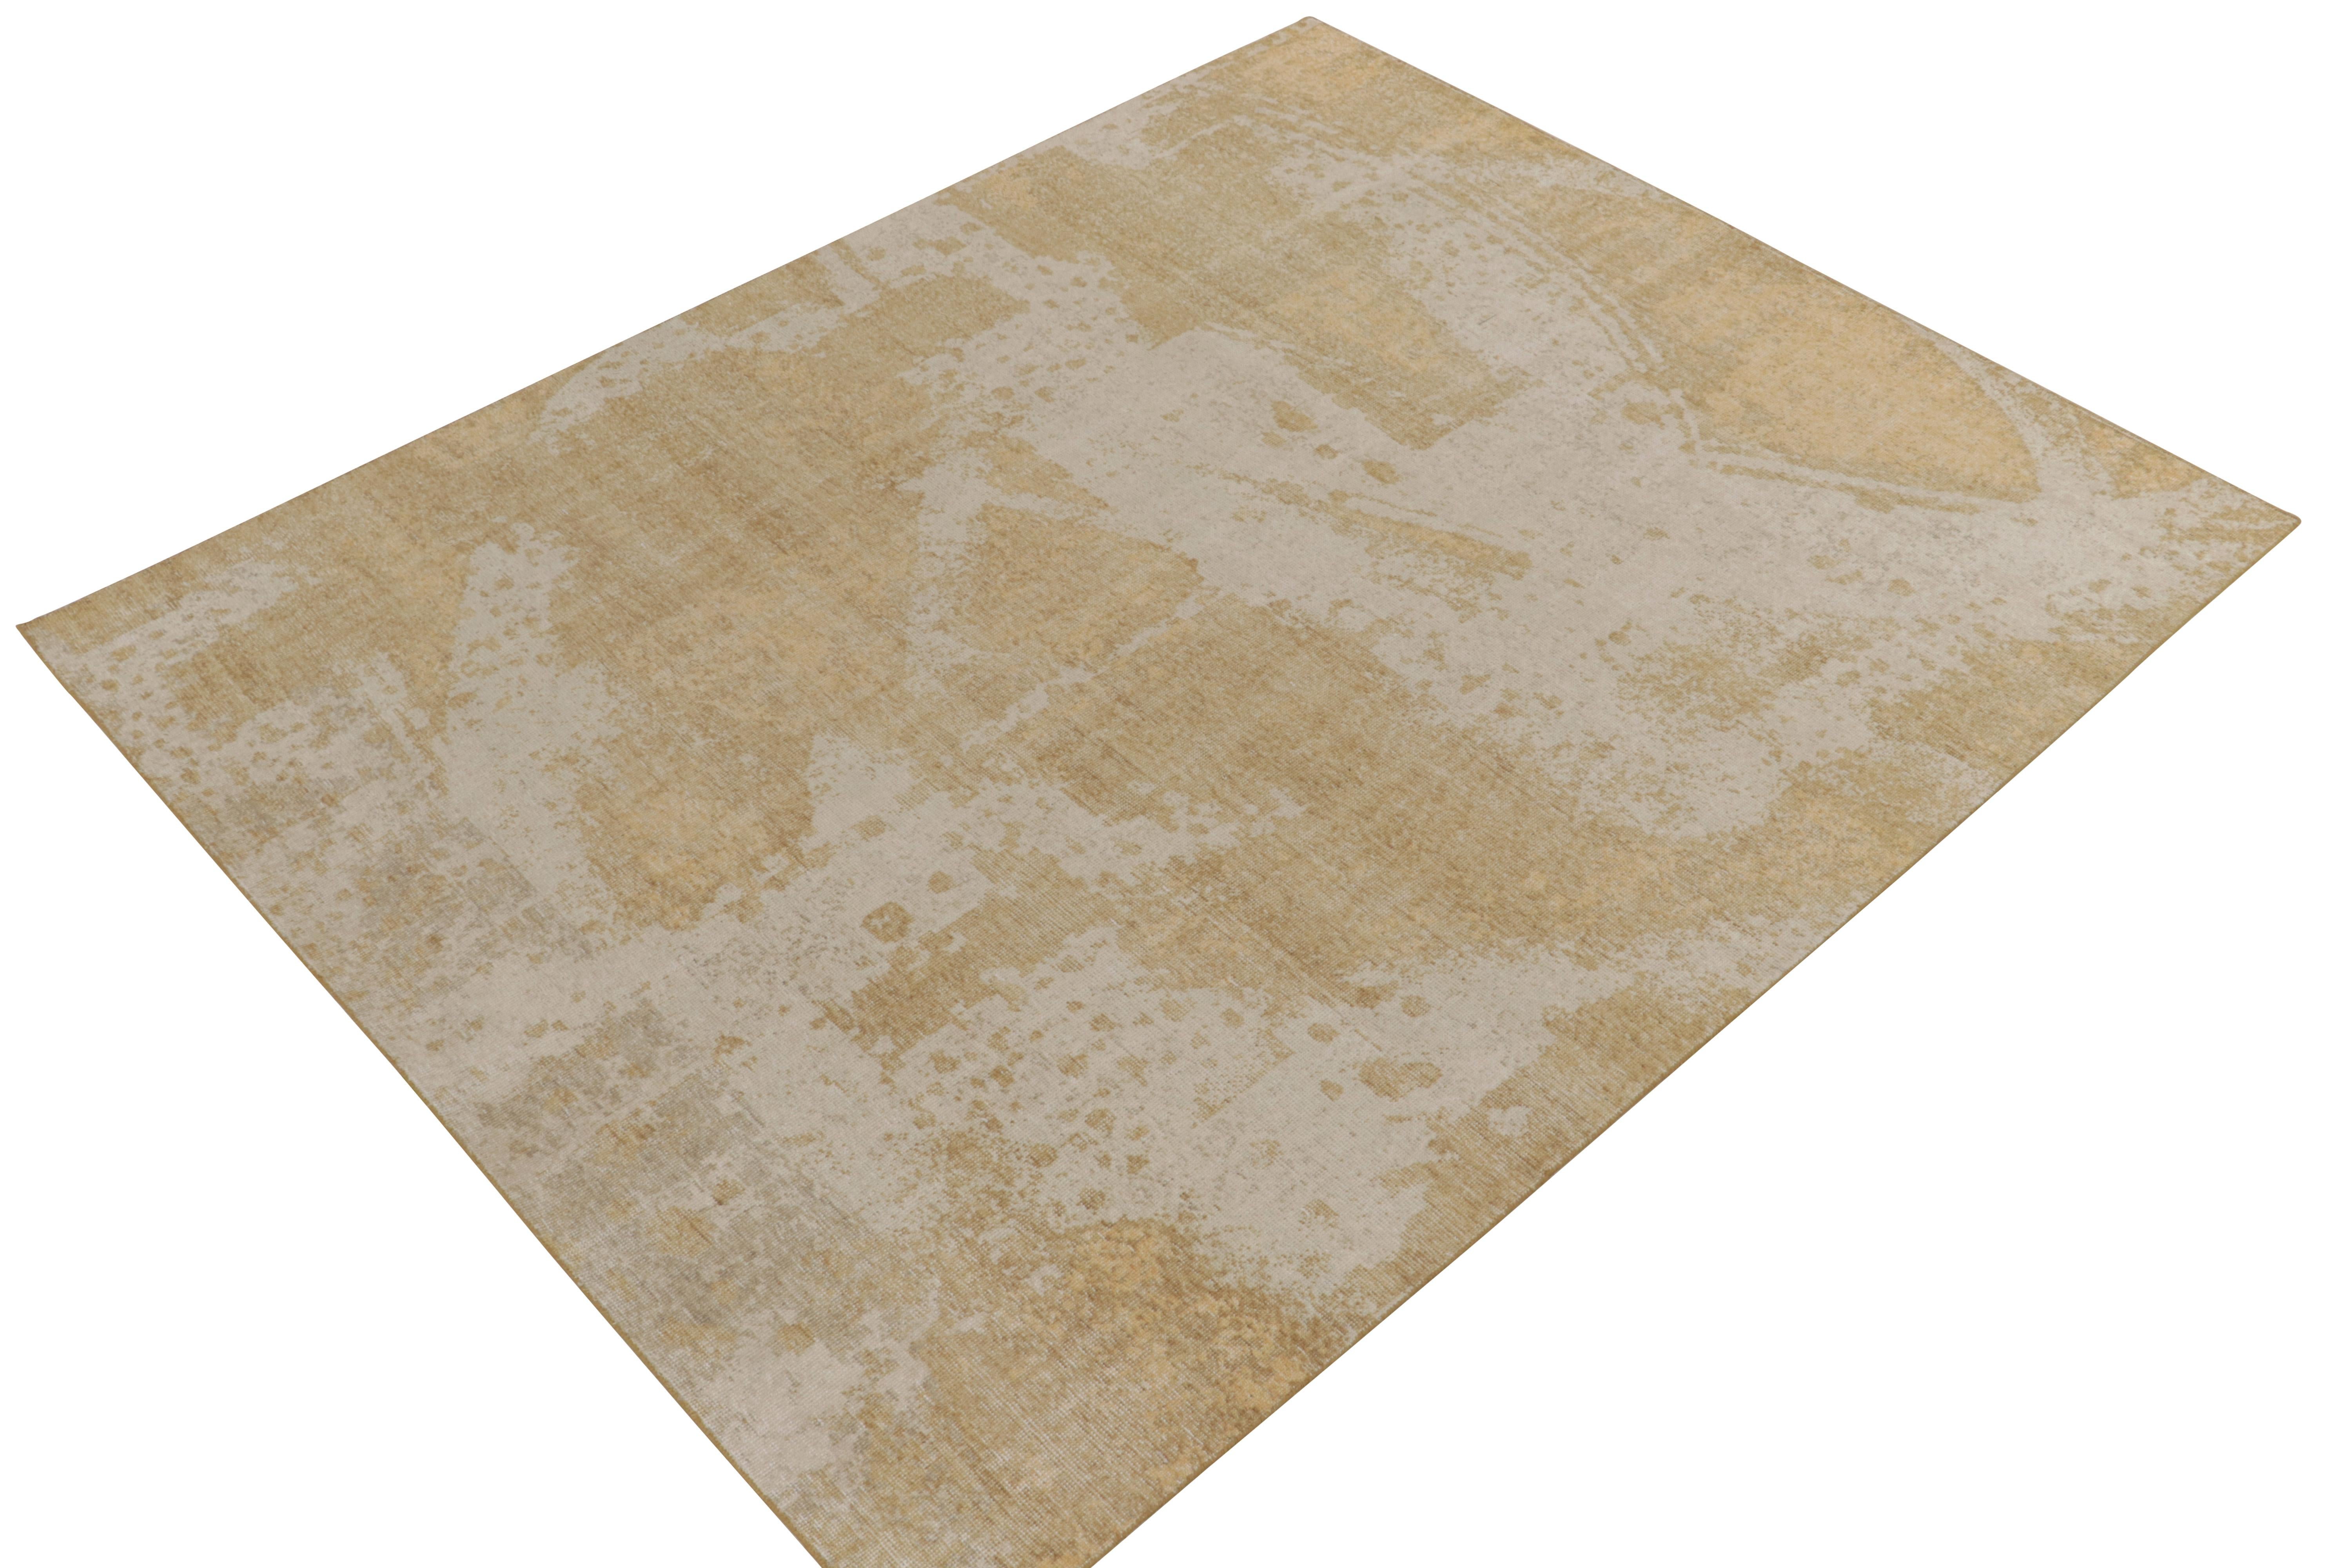 Issu de la collection Homage de Rug & Kilim, ce tapis abstrait de 8x10 au style vieilli présente un jeu positif-négatif de beige somptueux et d'or riche pour une version séduisante de ce style texturé. La facilité d'entretien et le confort du lavage